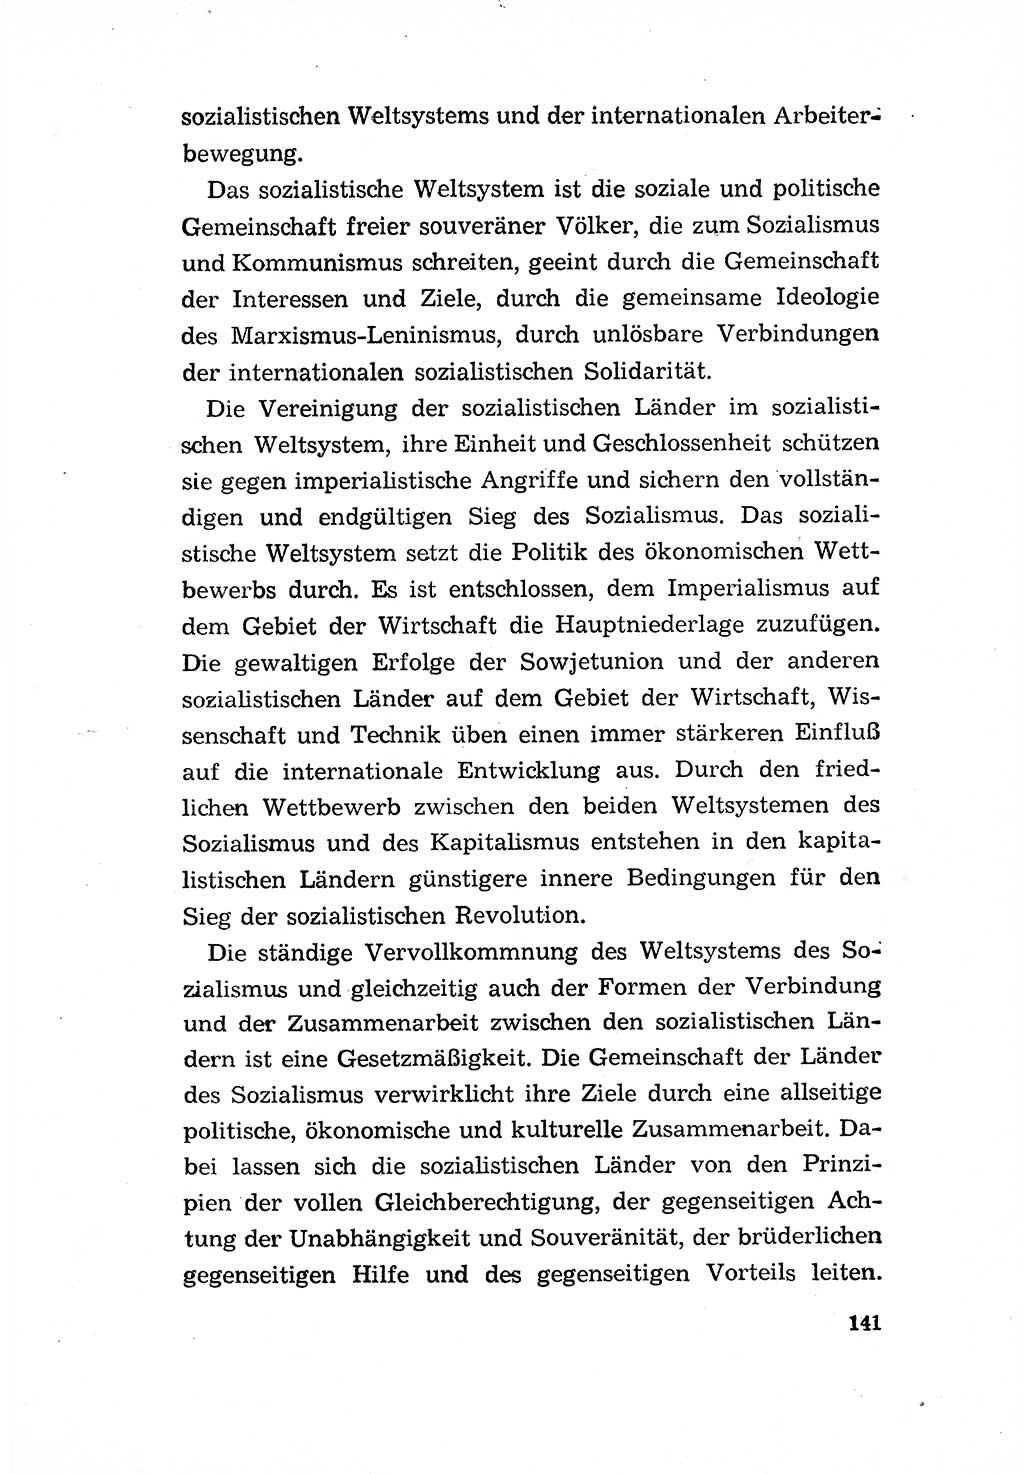 Programm der Sozialistischen Einheitspartei Deutschlands (SED) [Deutsche Demokratische Republik (DDR)] 1963, Seite 141 (Progr. SED DDR 1963, S. 141)